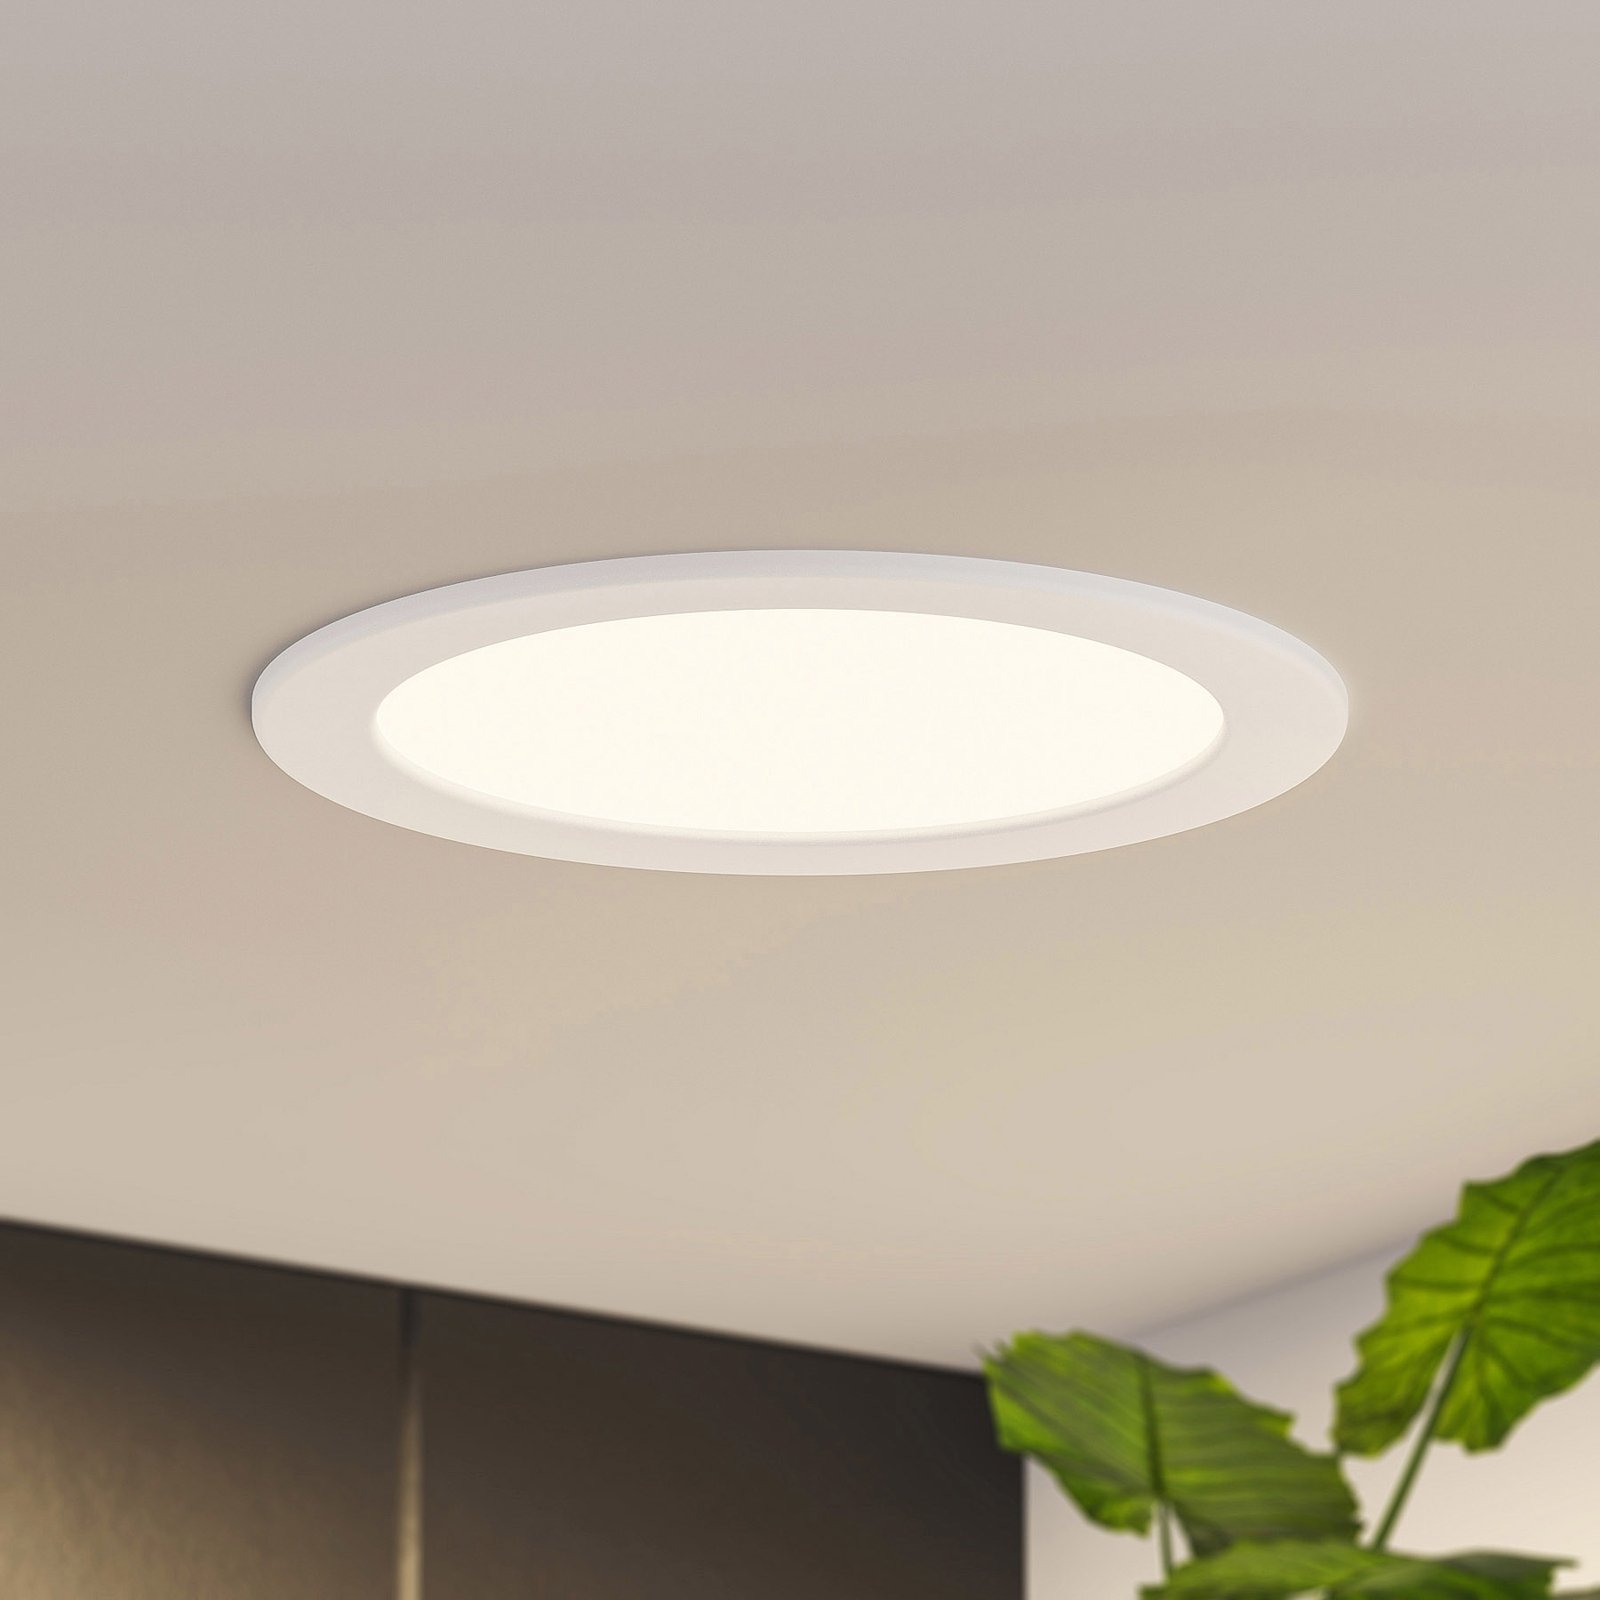 Prios LED ugradbena svjetiljka Cadance, bijela, 22 cm, set 3 kom, prigušiva